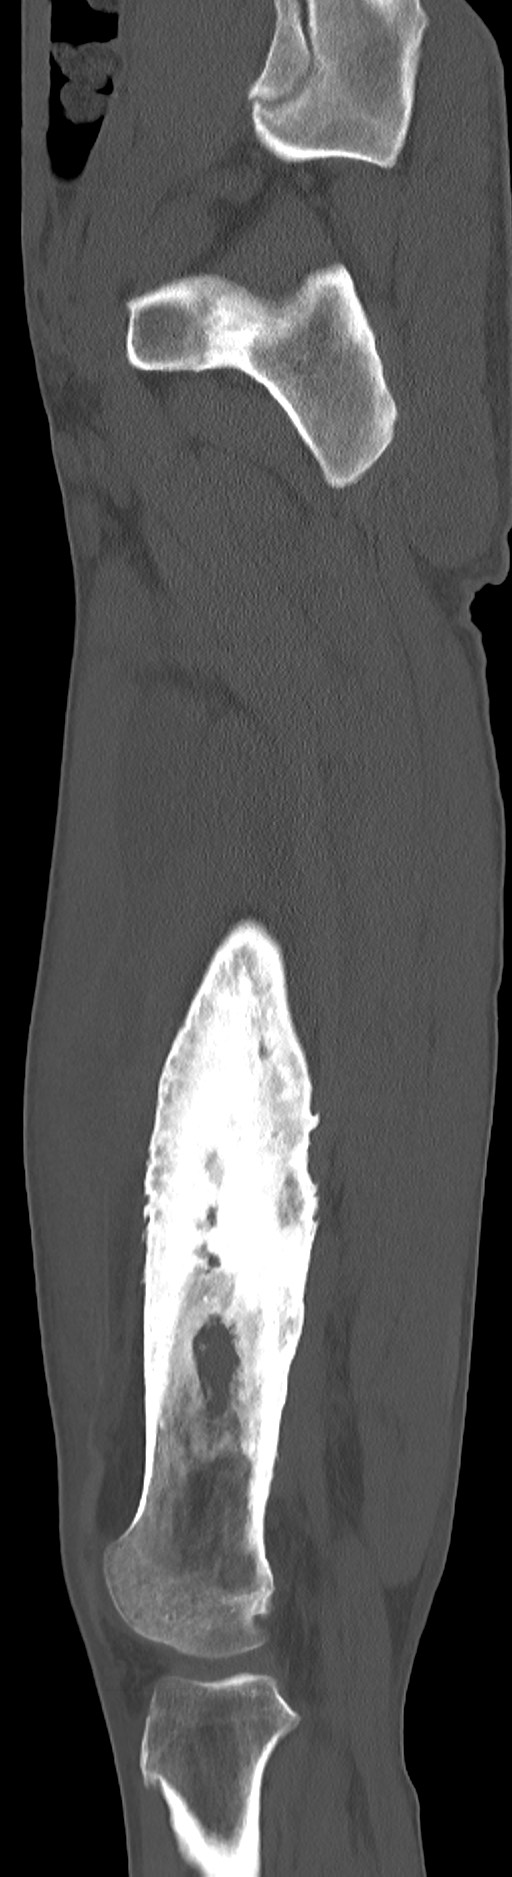 Chronic osteomyelitis (with sequestrum) (Radiopaedia 74813-85822 C 75).jpg